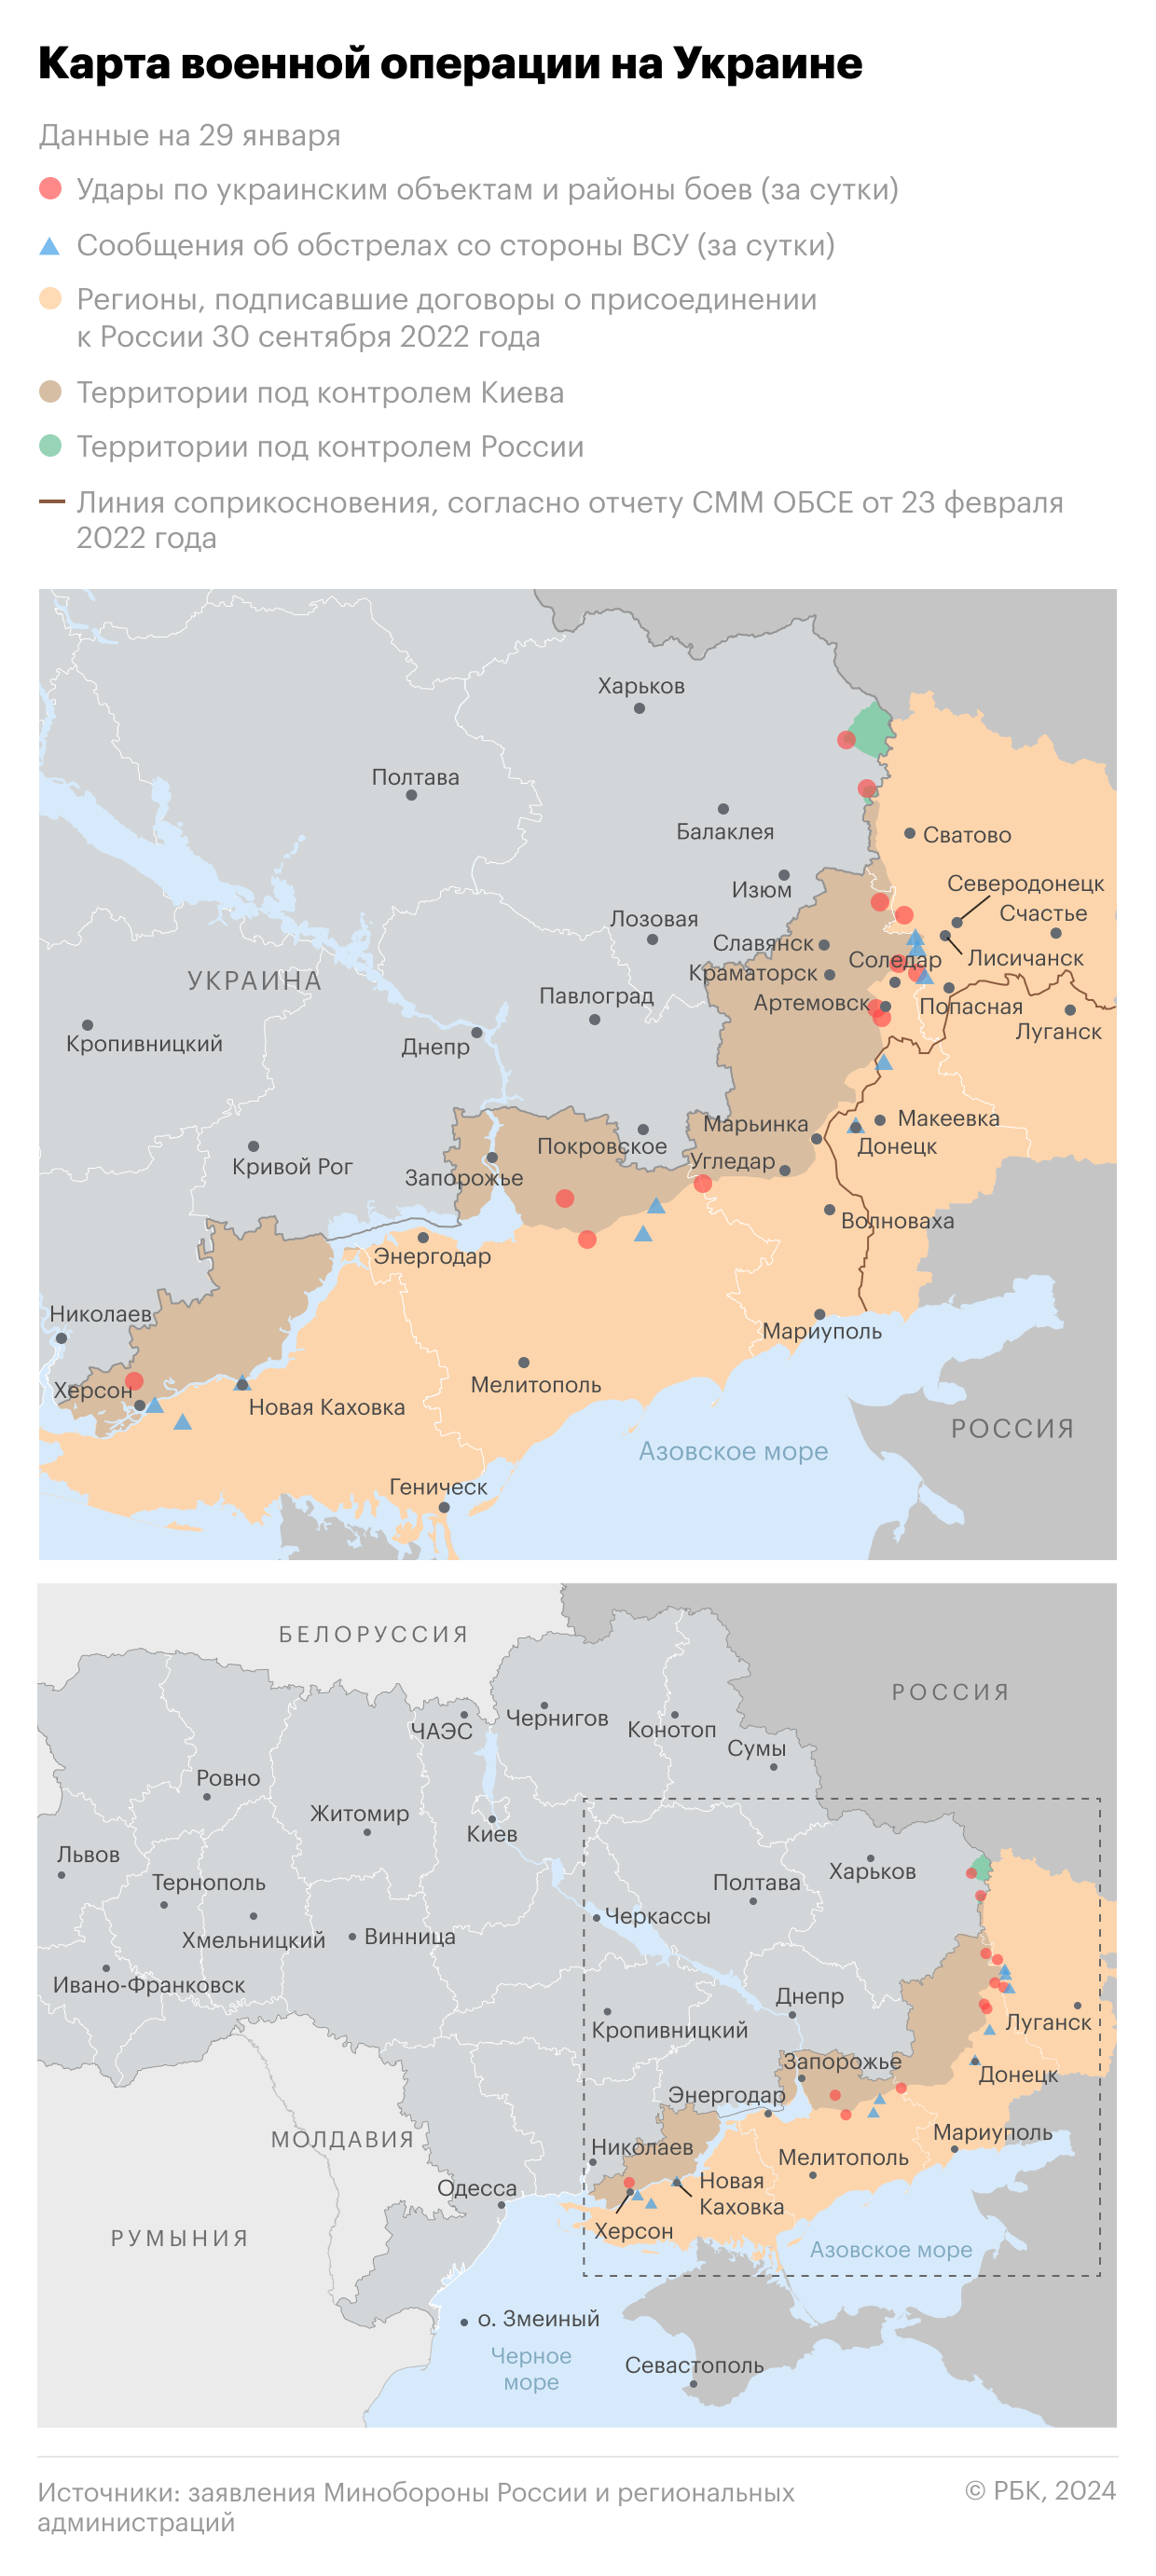 В четырех областях Украины произошли взрывы"/>













